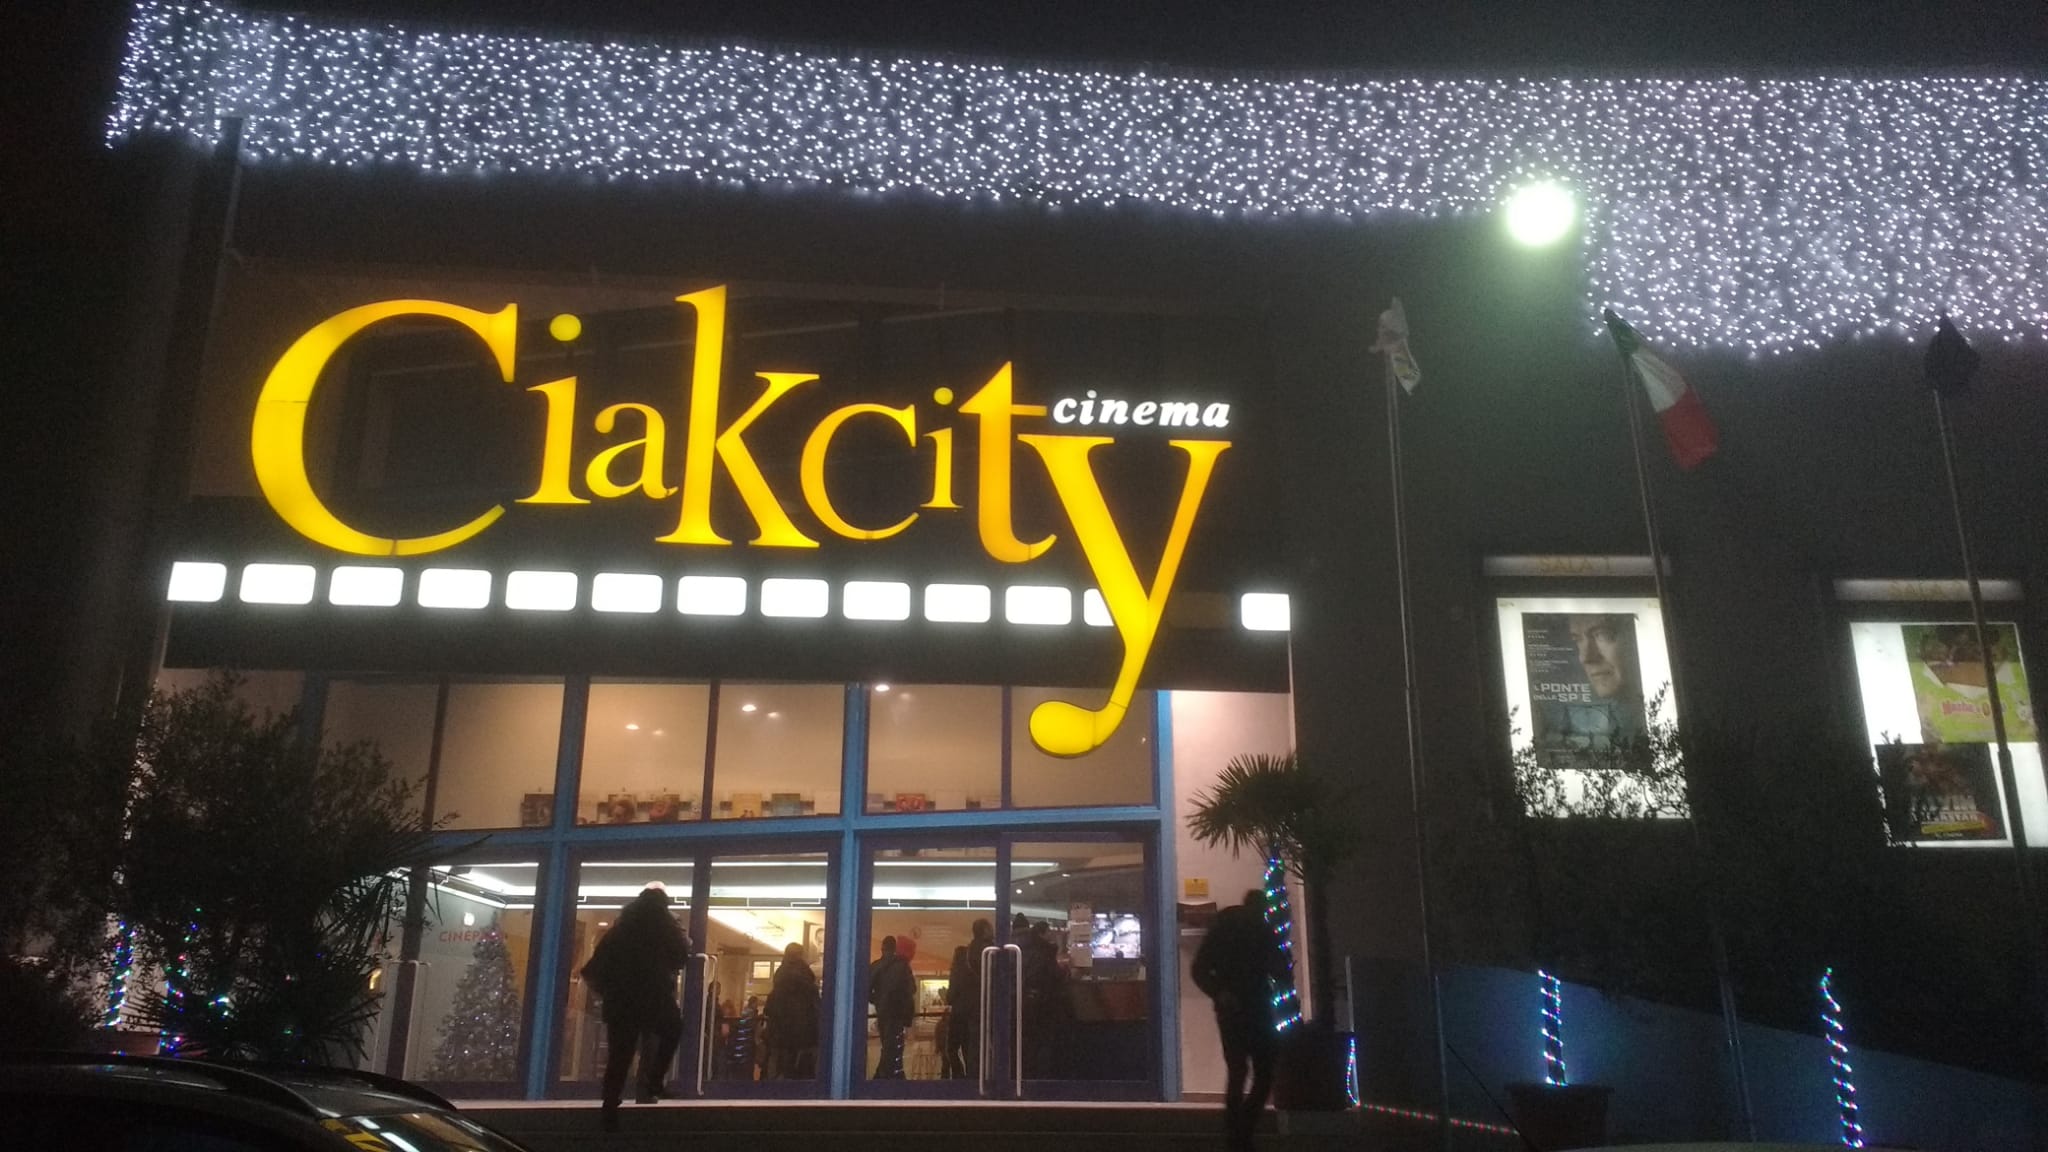 Lanciano, si riaccendono gli schermi del cinema Ciak City nel quartiere Santa Rita